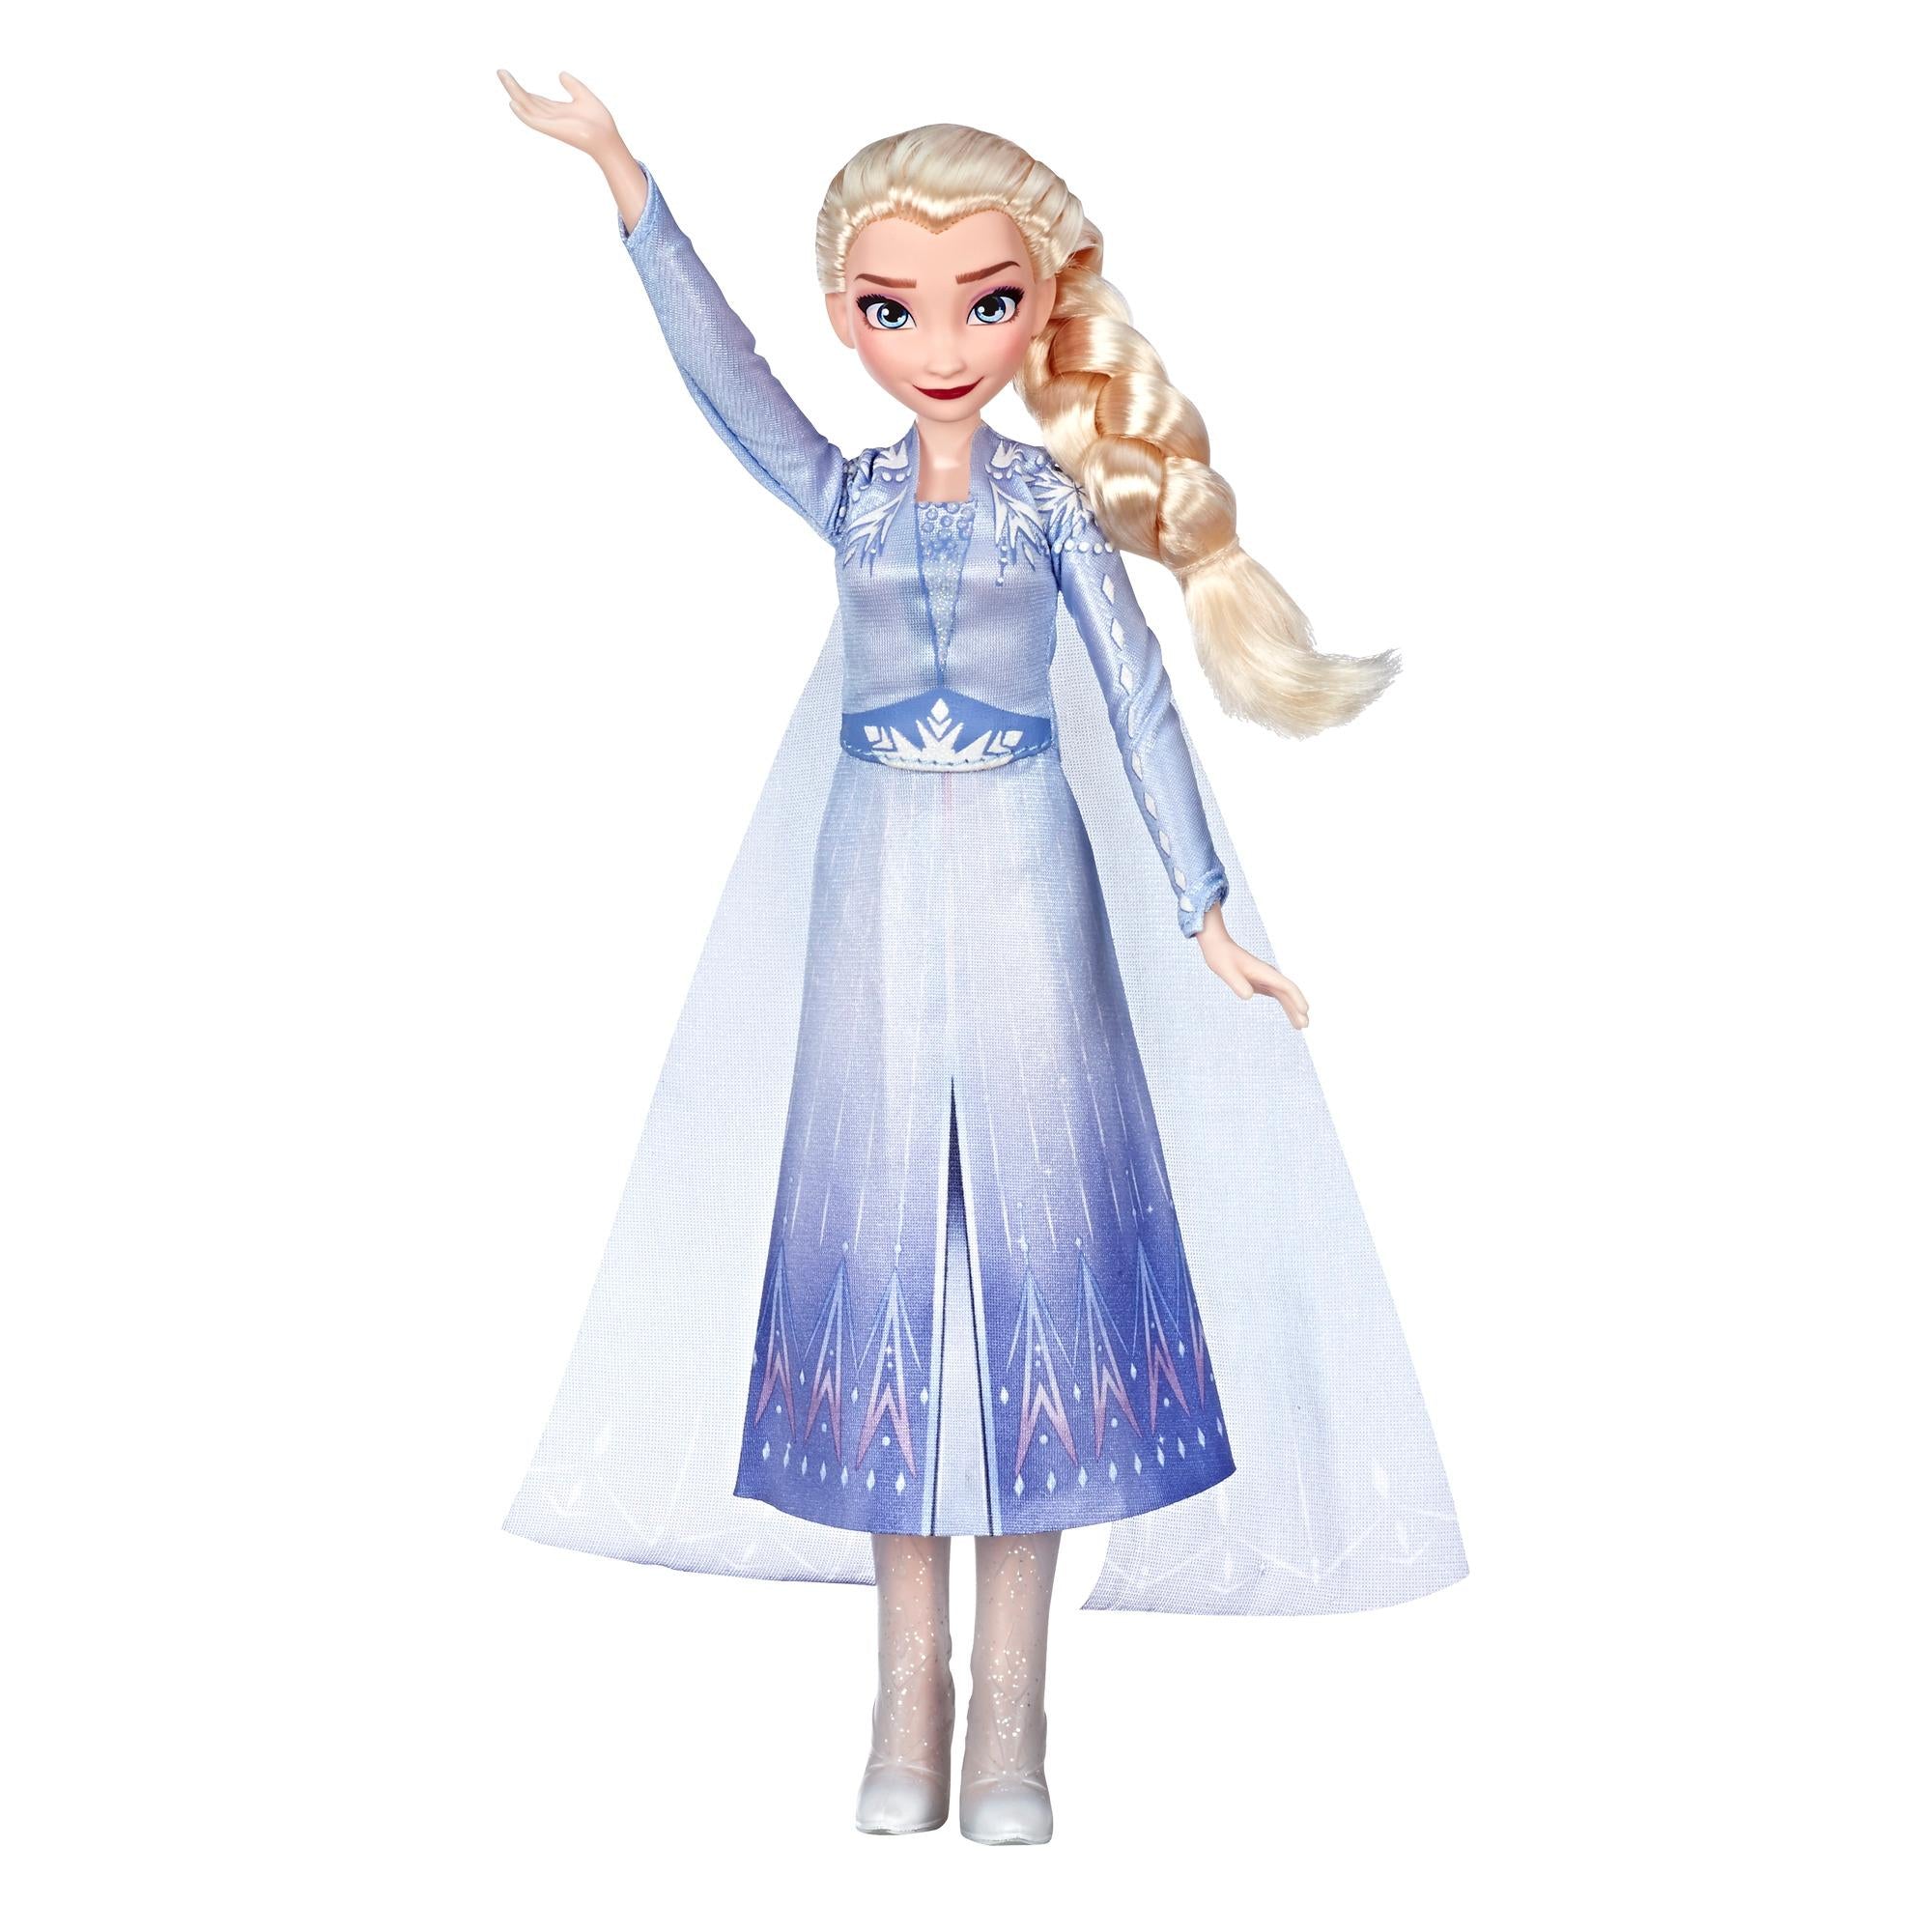 Frozen II: Singing Elsa Doll